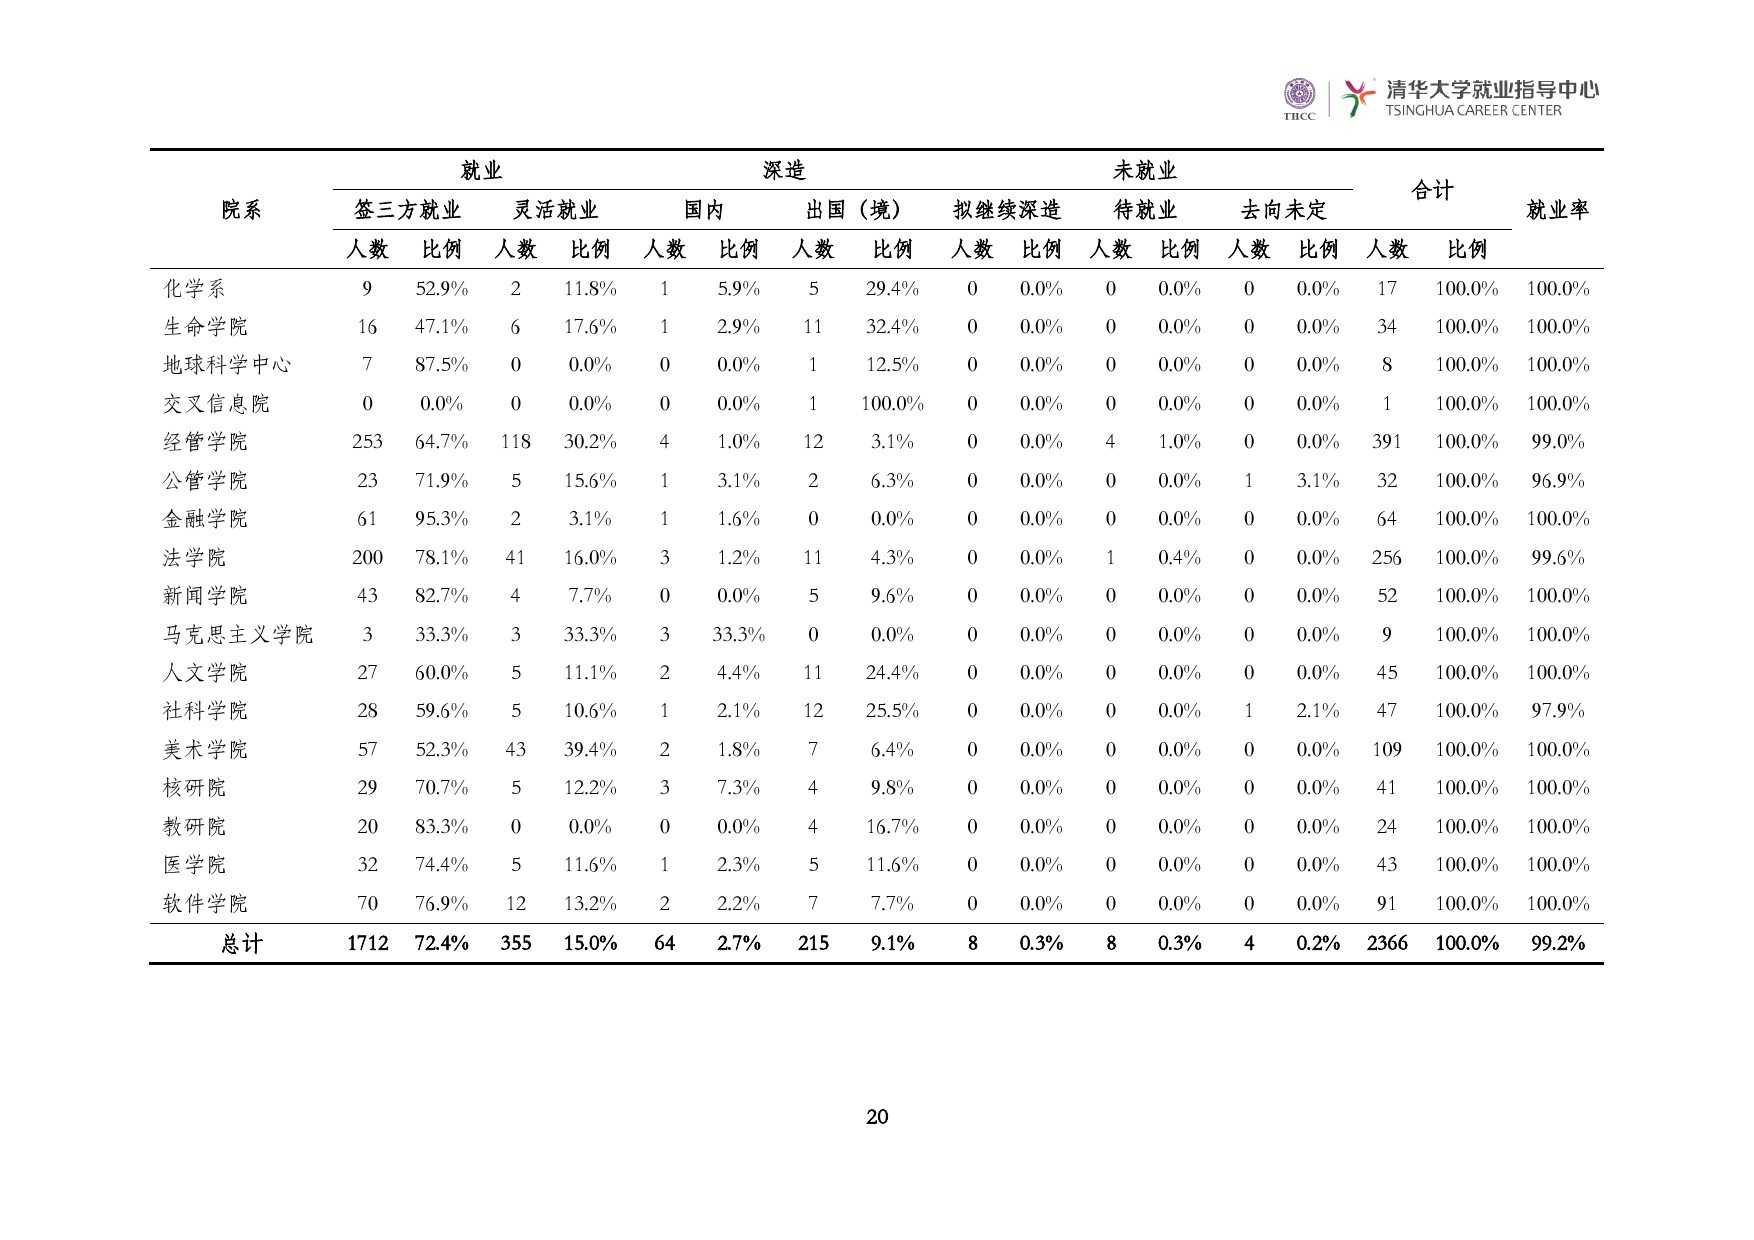 清華大學2014 年畢業生就業質量報告_000022